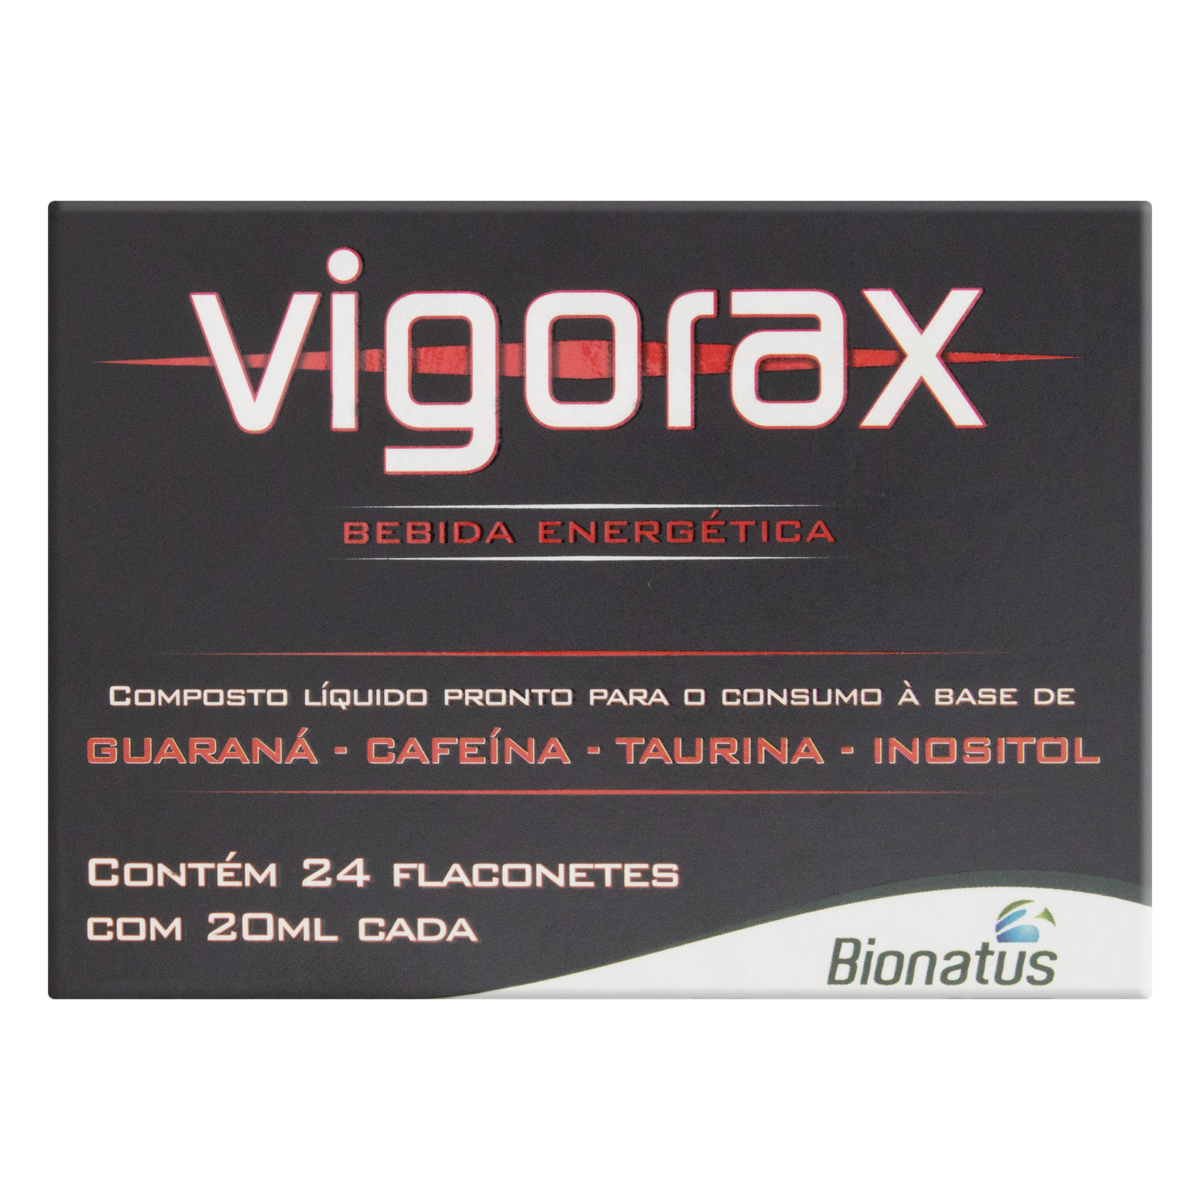 7896108007064 - VIGORAX